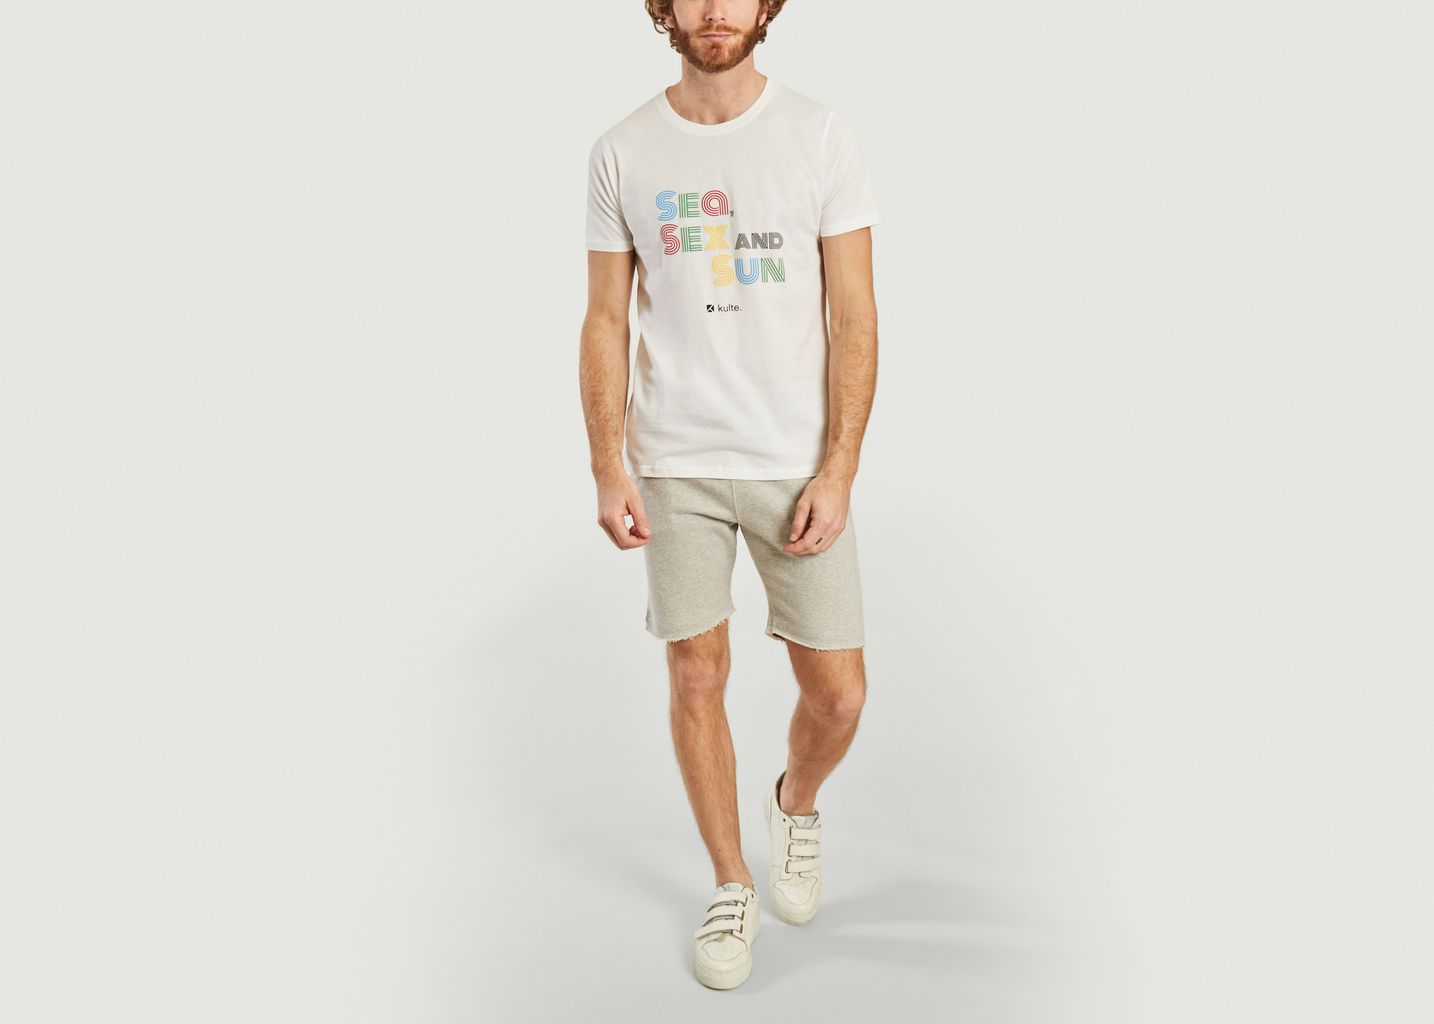 T-shirt Sea & Sun - Kulte